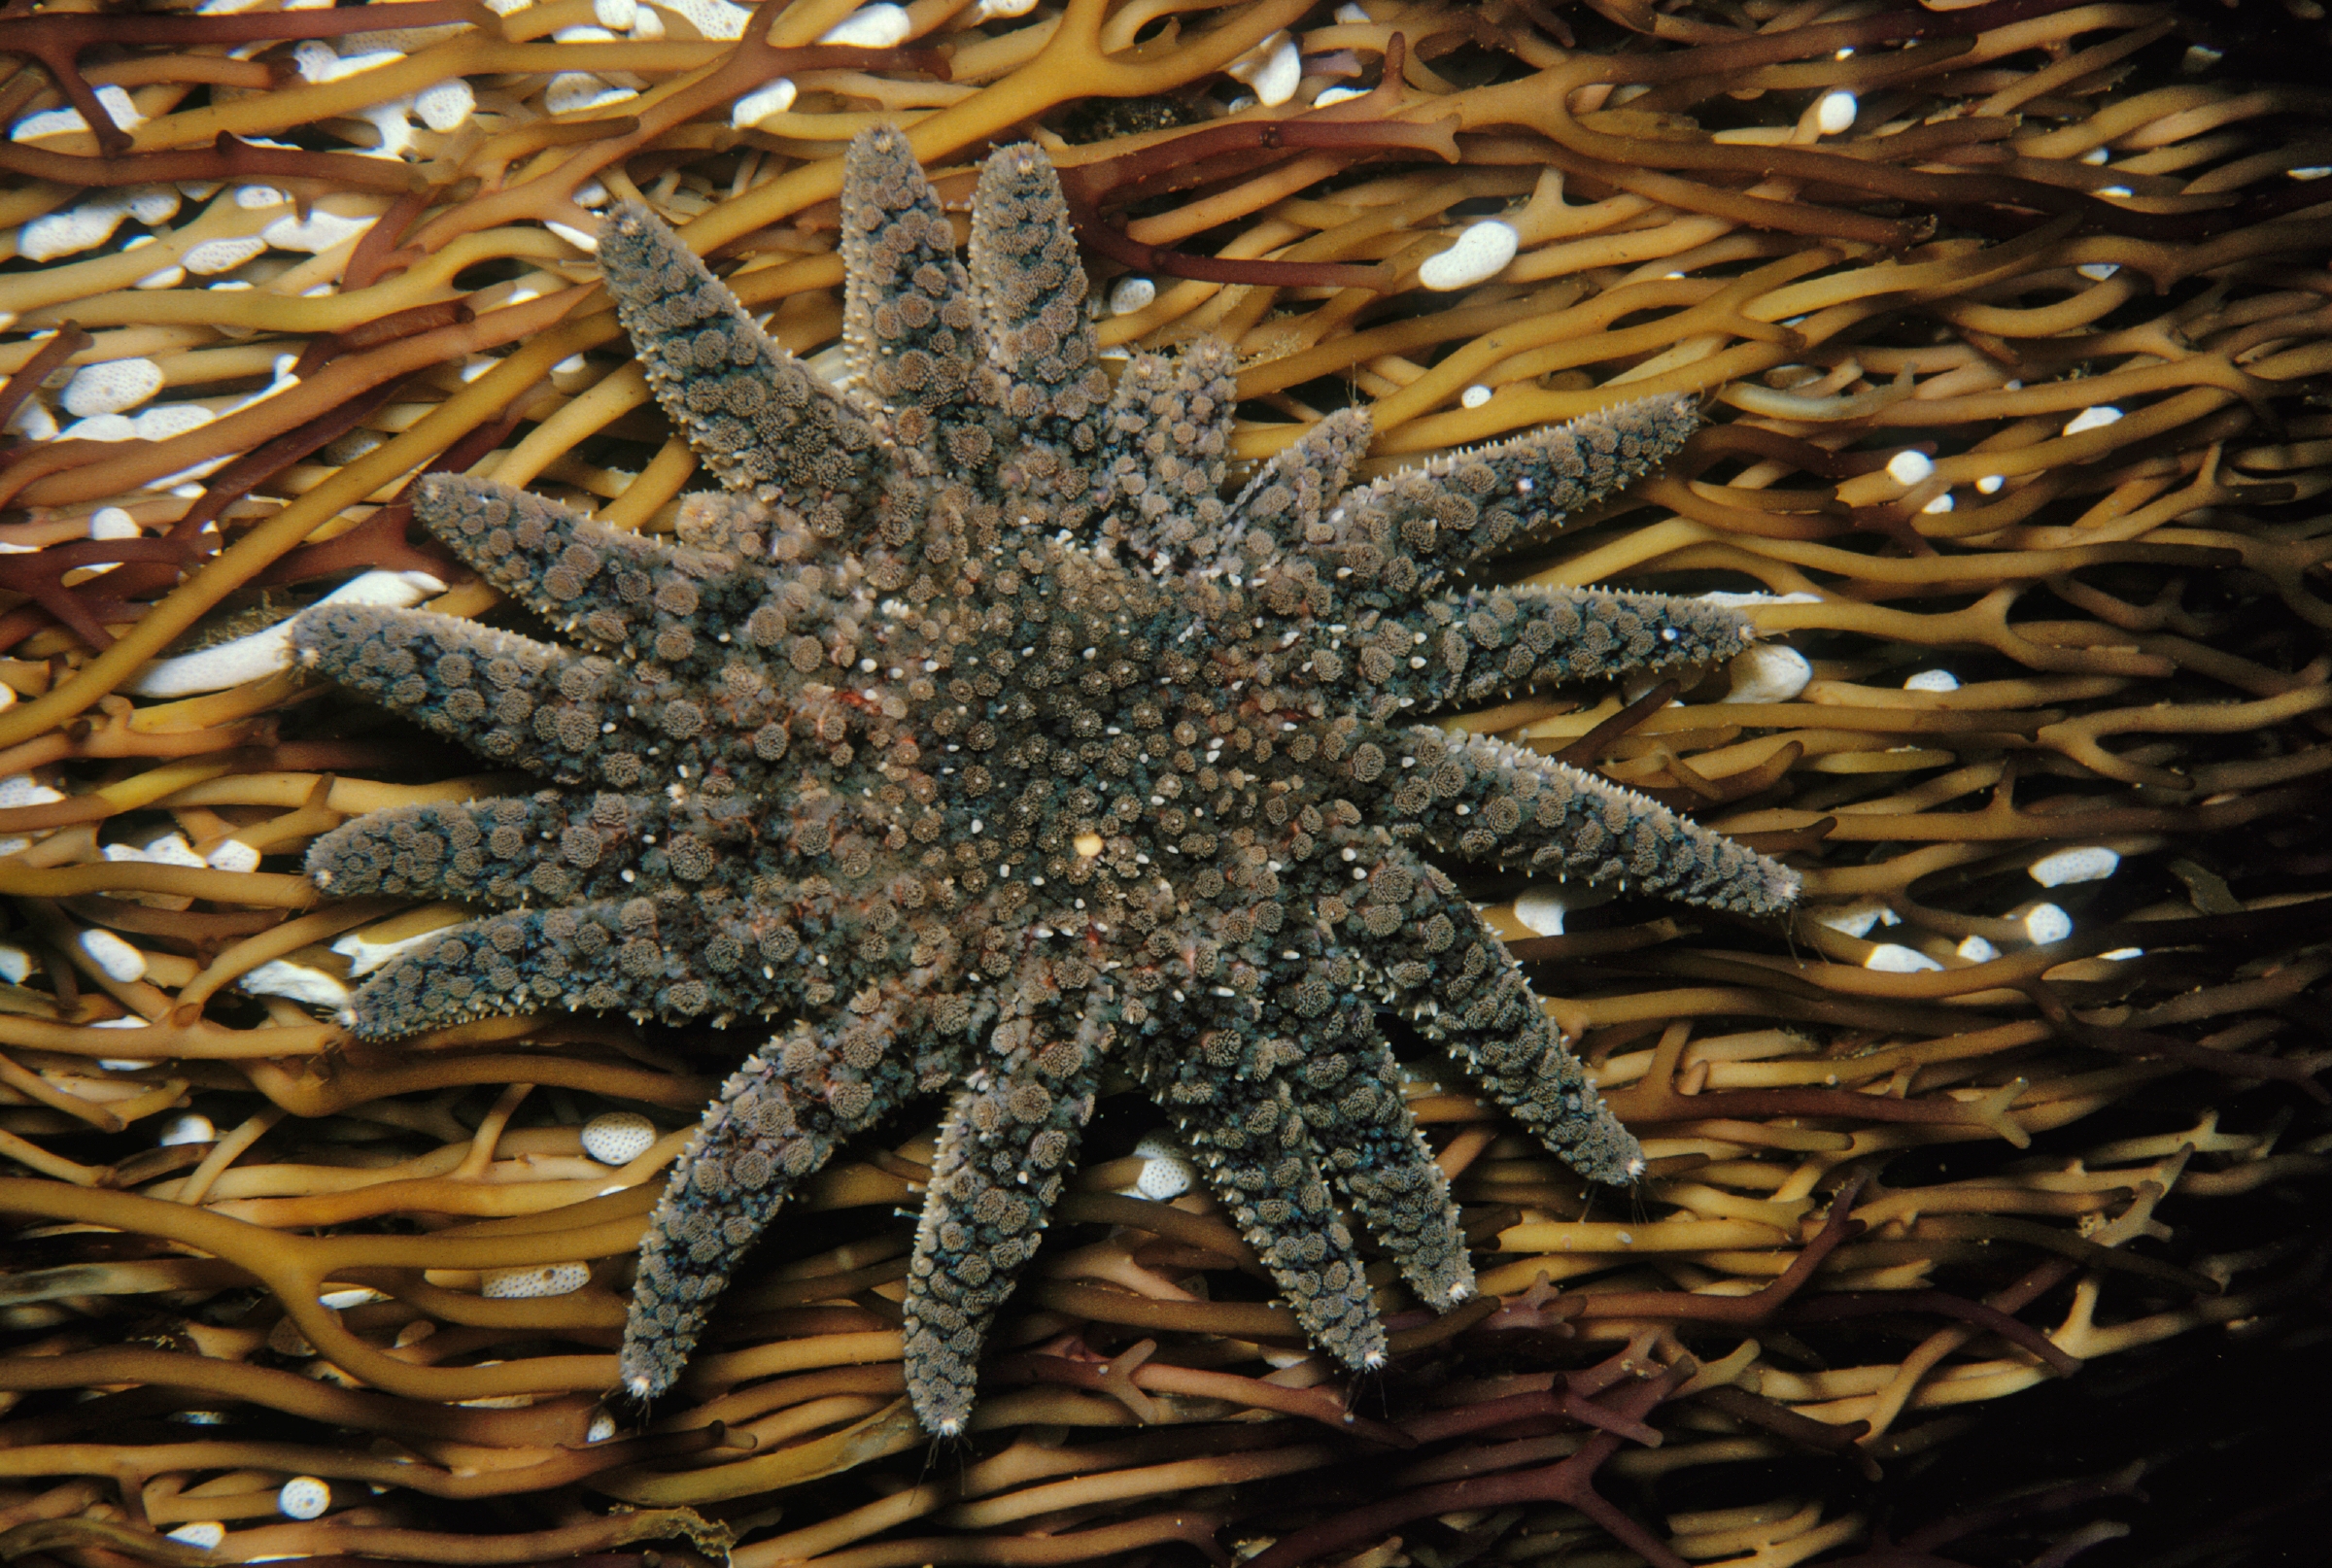 Sunflower Sea Star, Online Learning Center